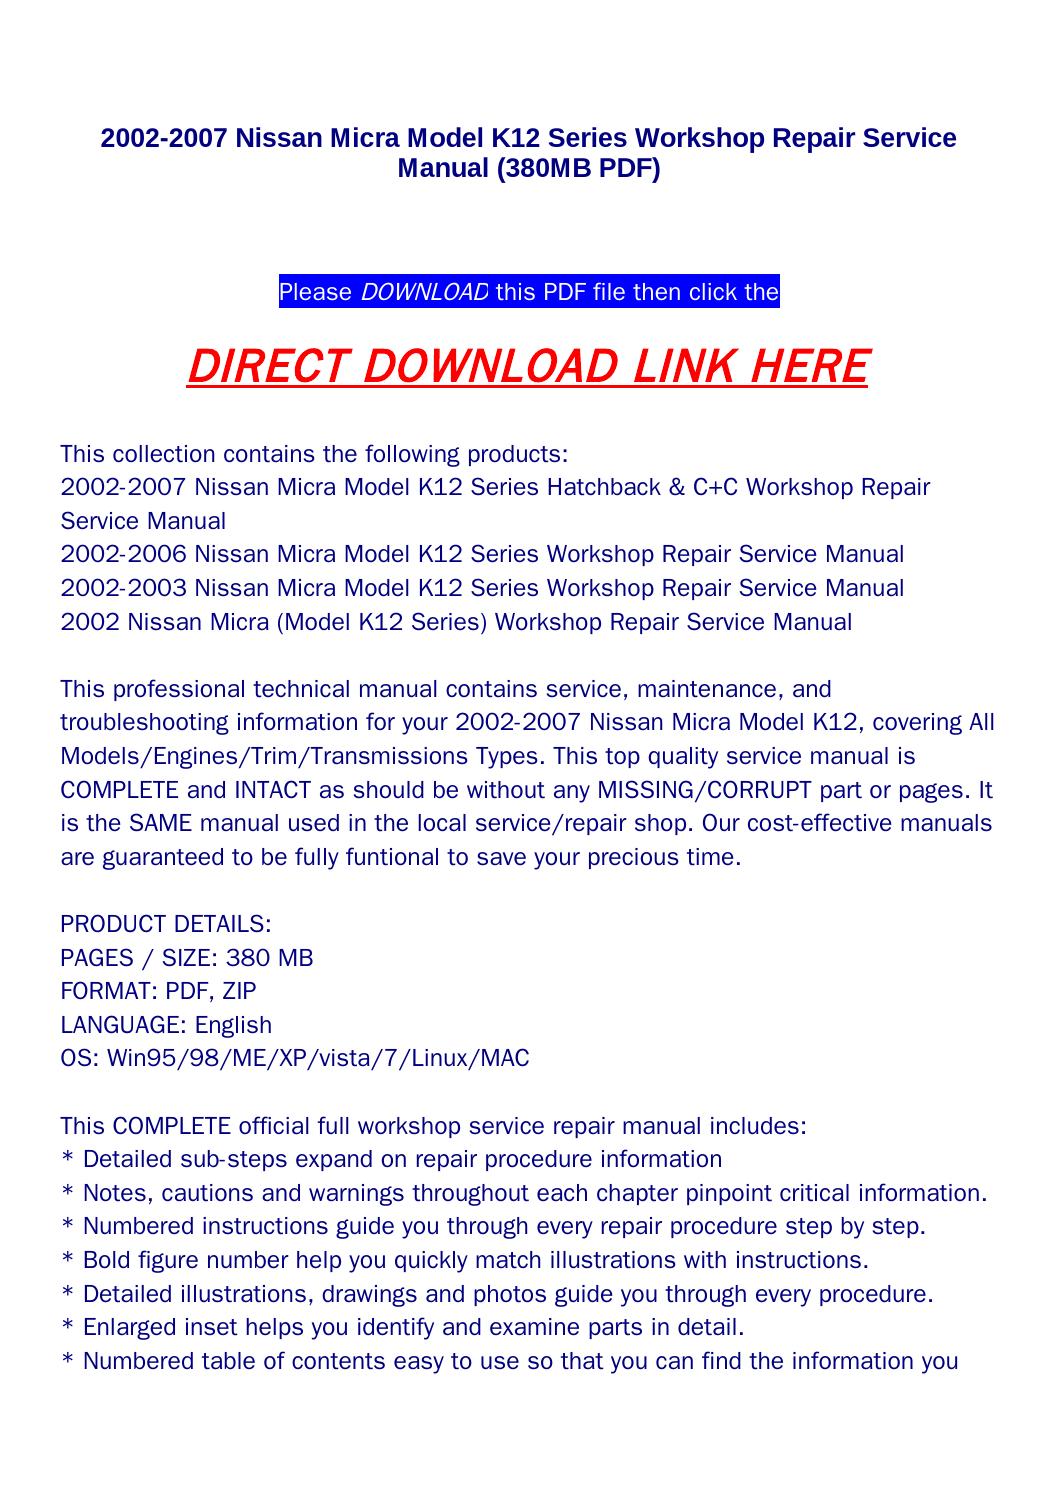 nissan micra k10 service manual pdf